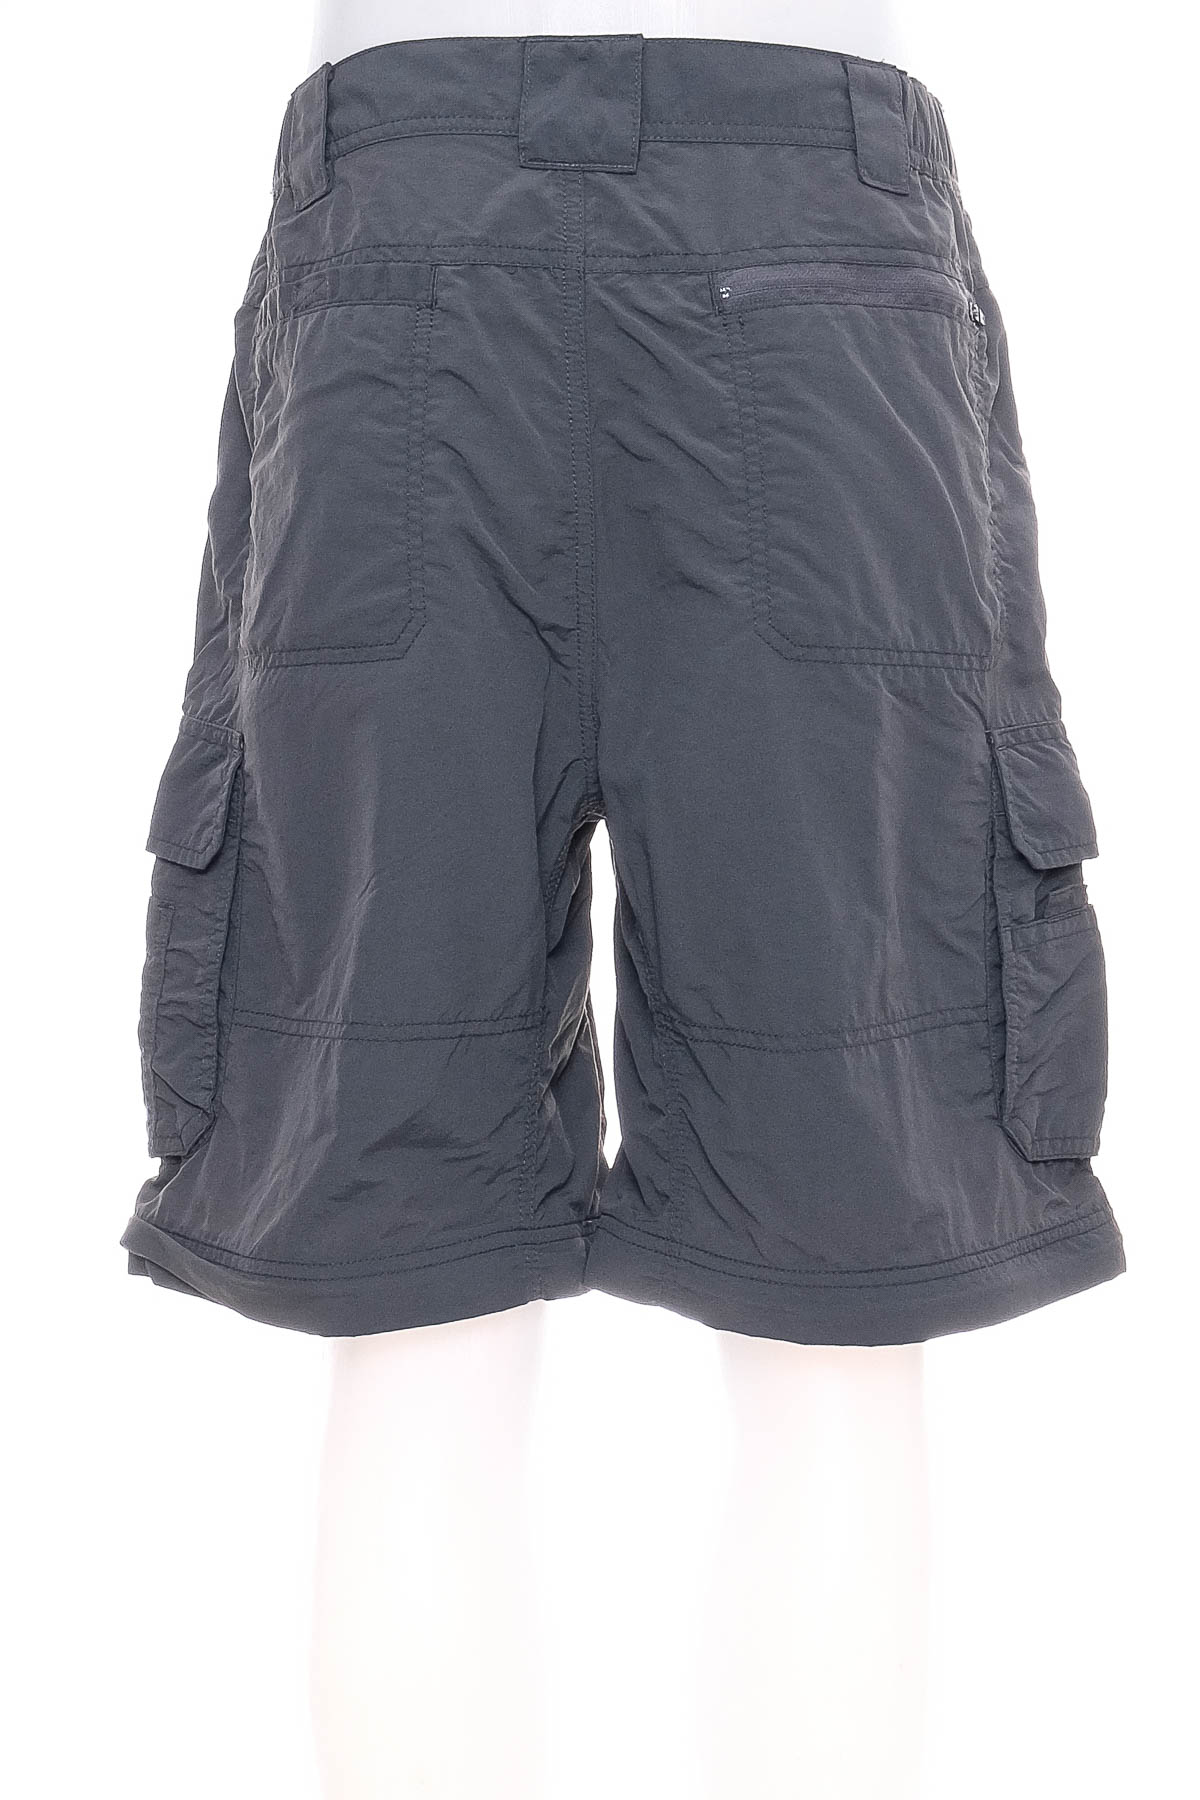 Pantaloni scurți bărbați - Alpine Design - 1